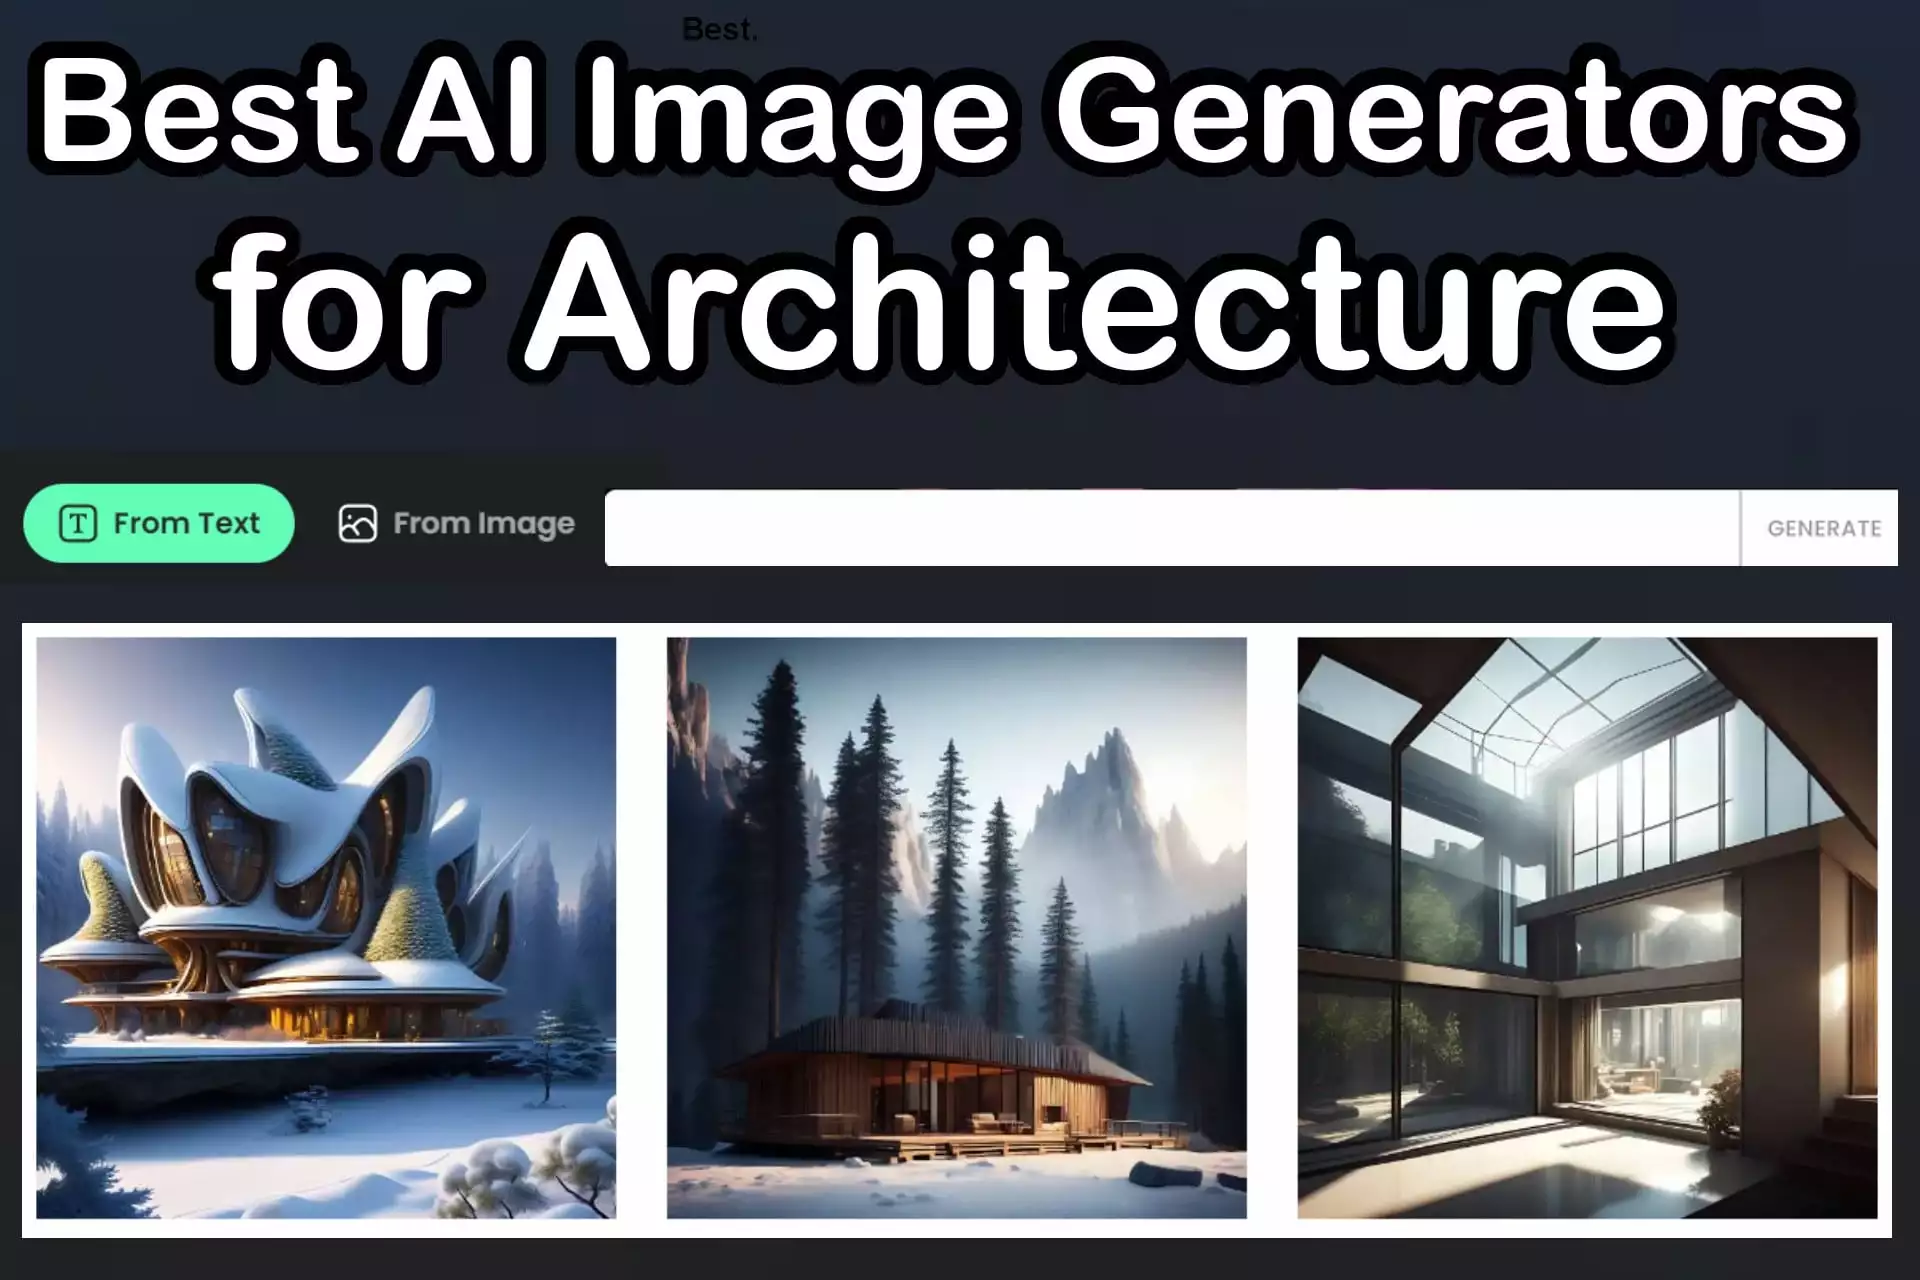 Architechtures - AI-Powered Building Design